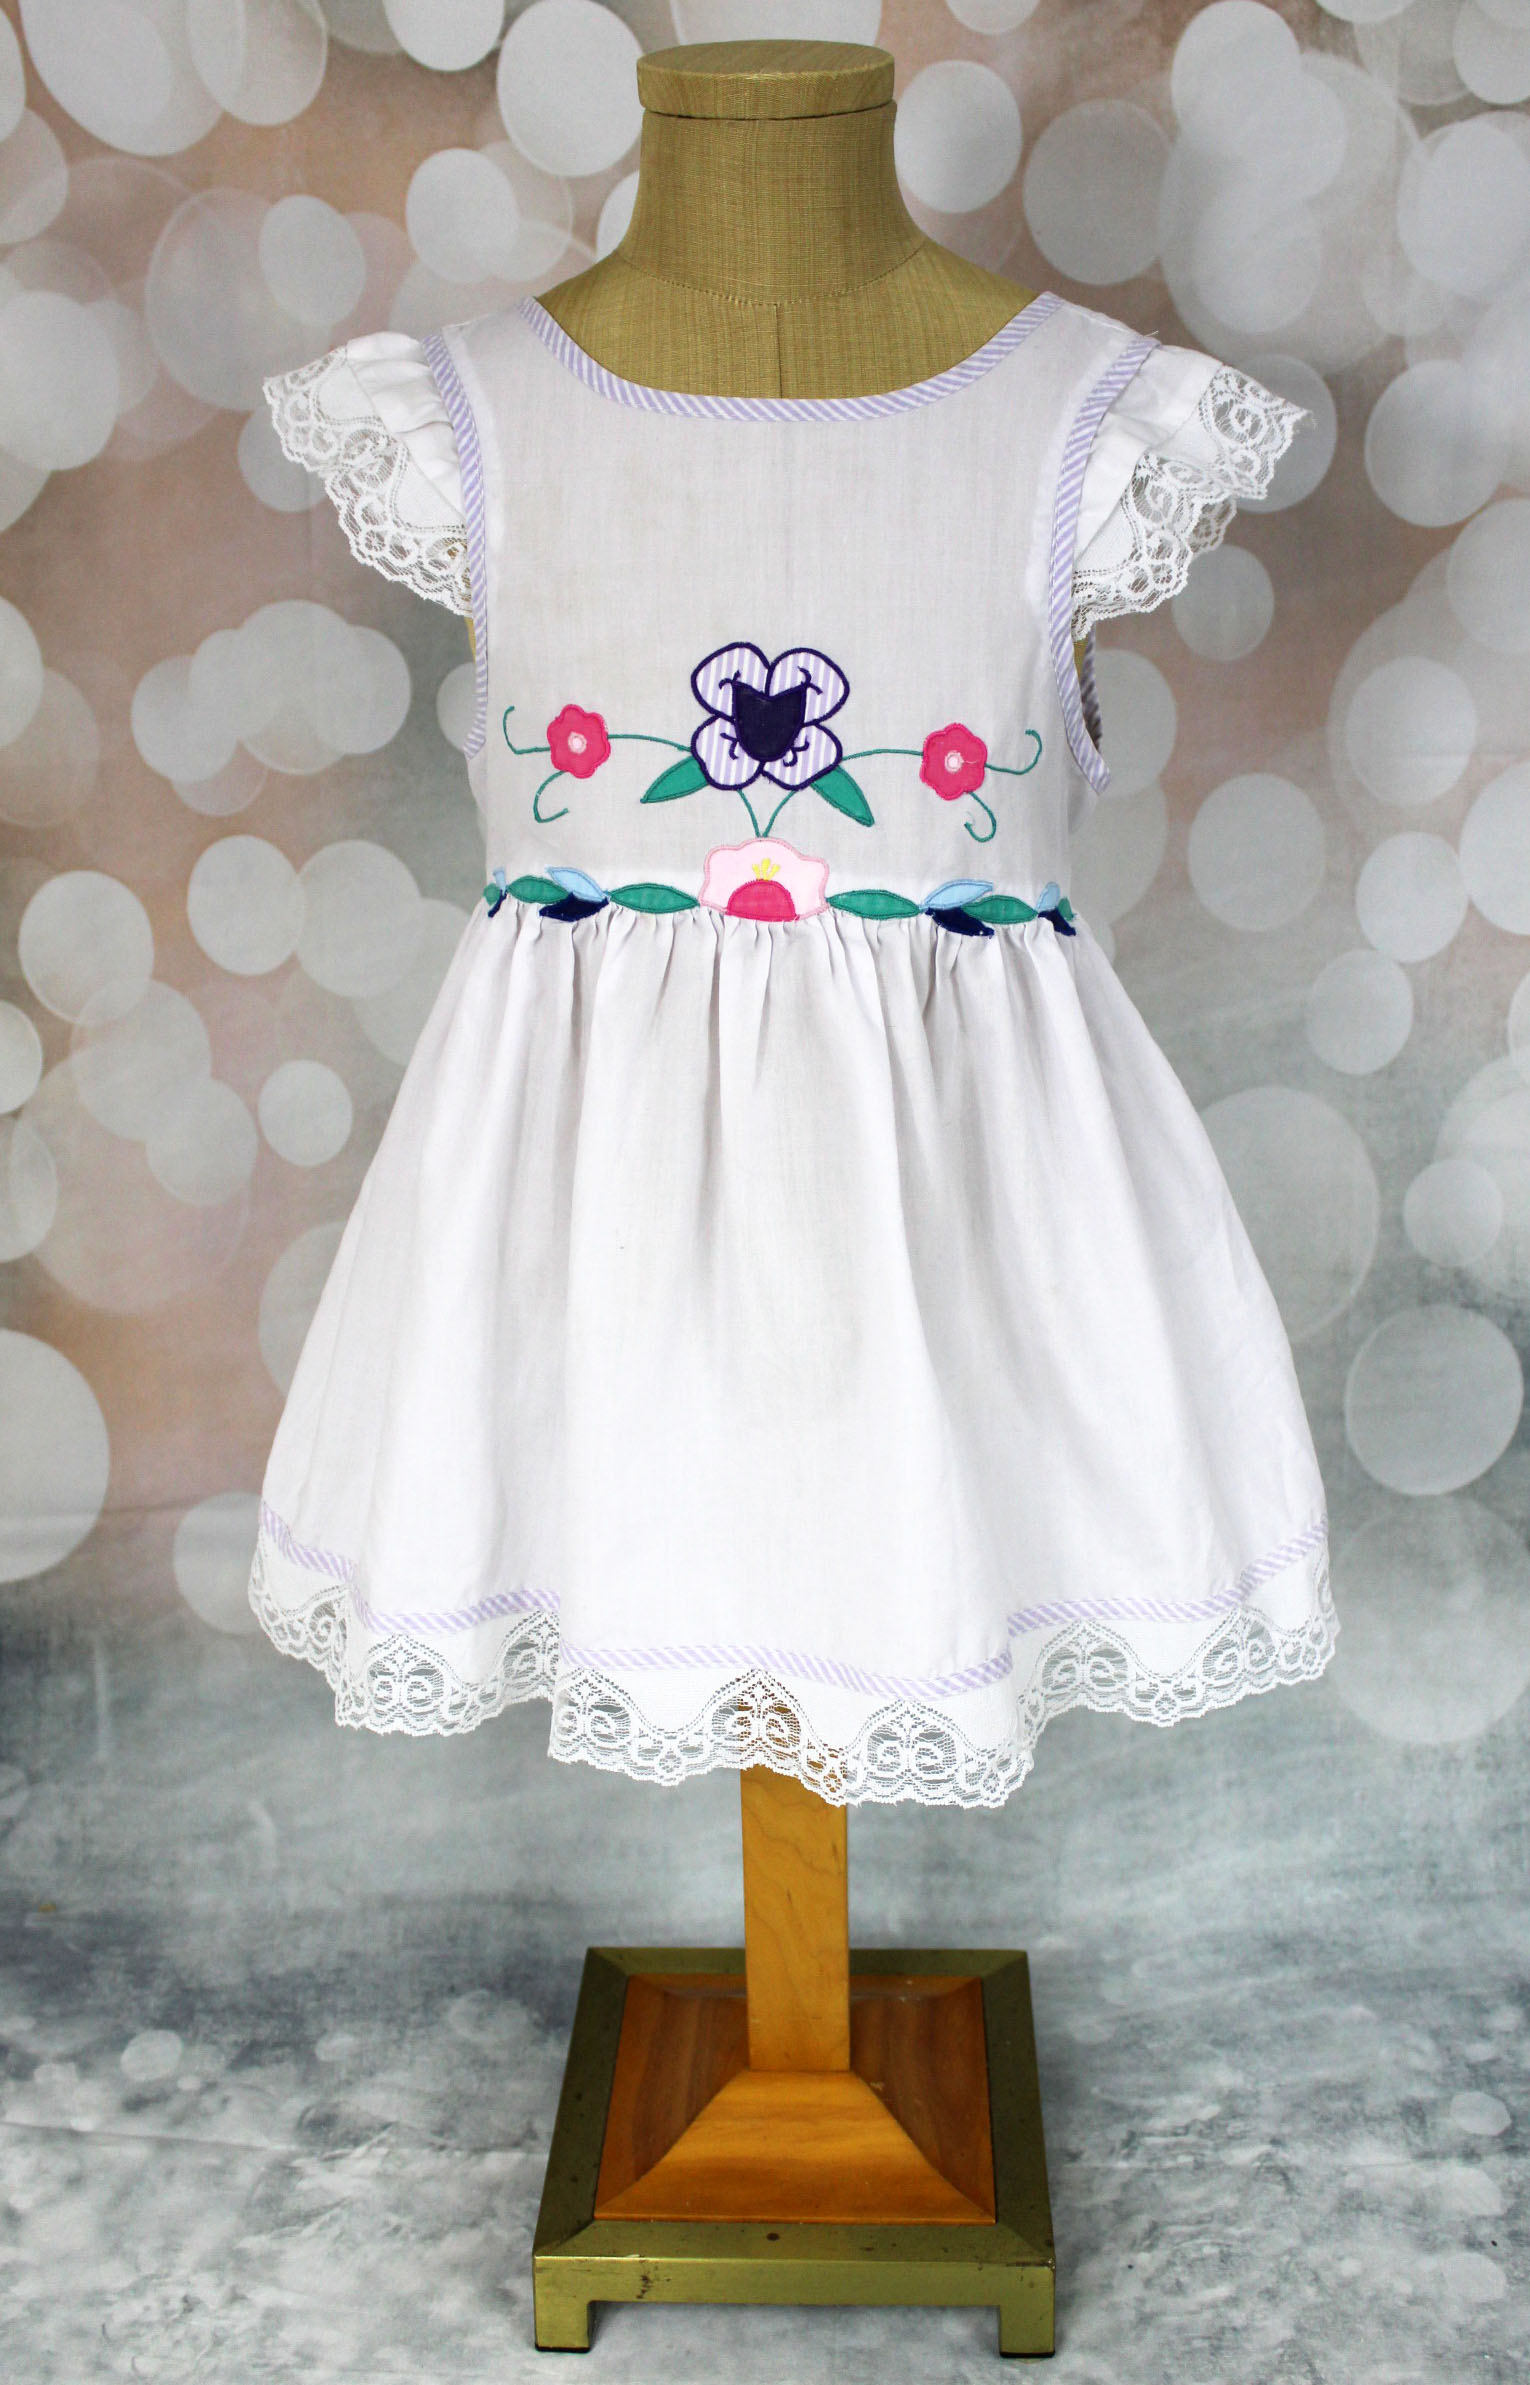 Duck dress Easter dress From the 70s Vintage 6m dress Summer cotton shirt dress